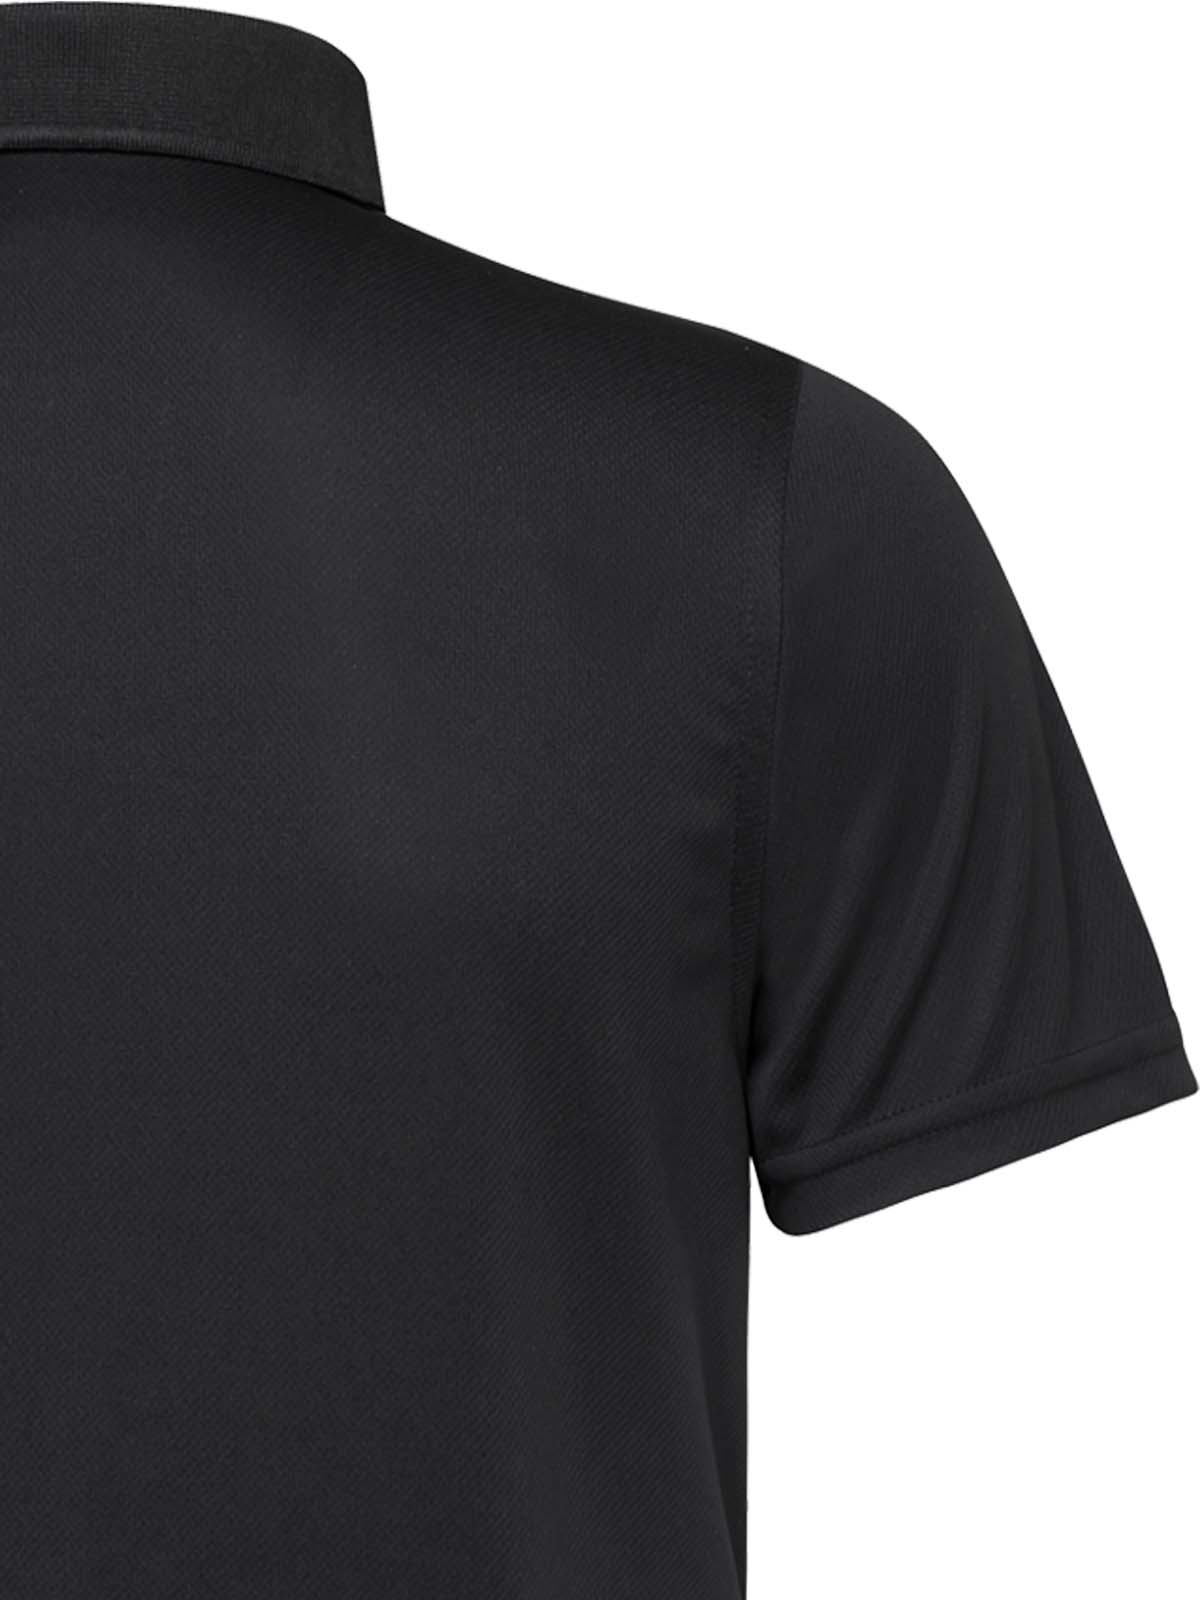 USA Polo Shirt Black